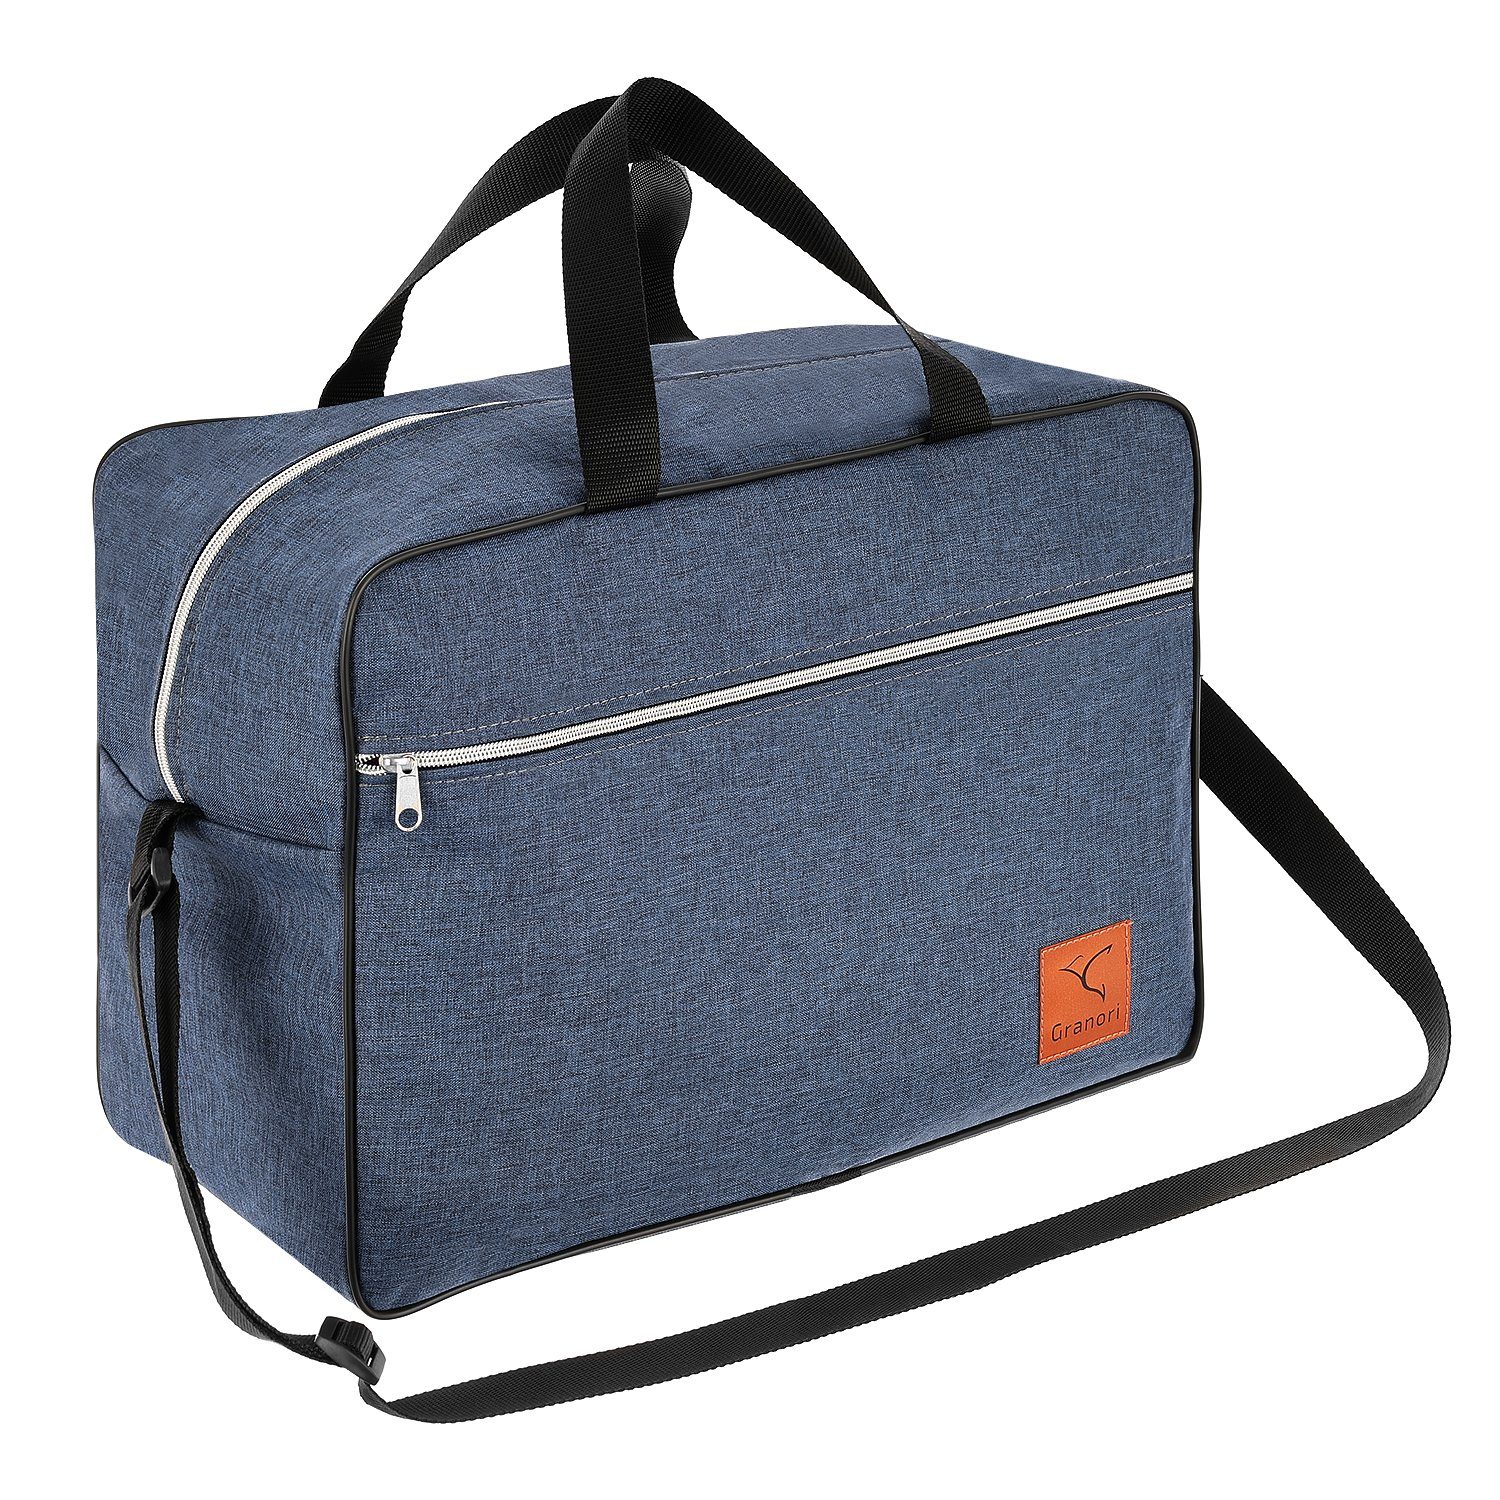 Granori Reisetasche 40x30x25 cm als Handgepäck 30 l für Flug mit z. B. Eurowings, extra leicht, mit geräumigem Hauptfach und verstellbarem Schultergurt Blau